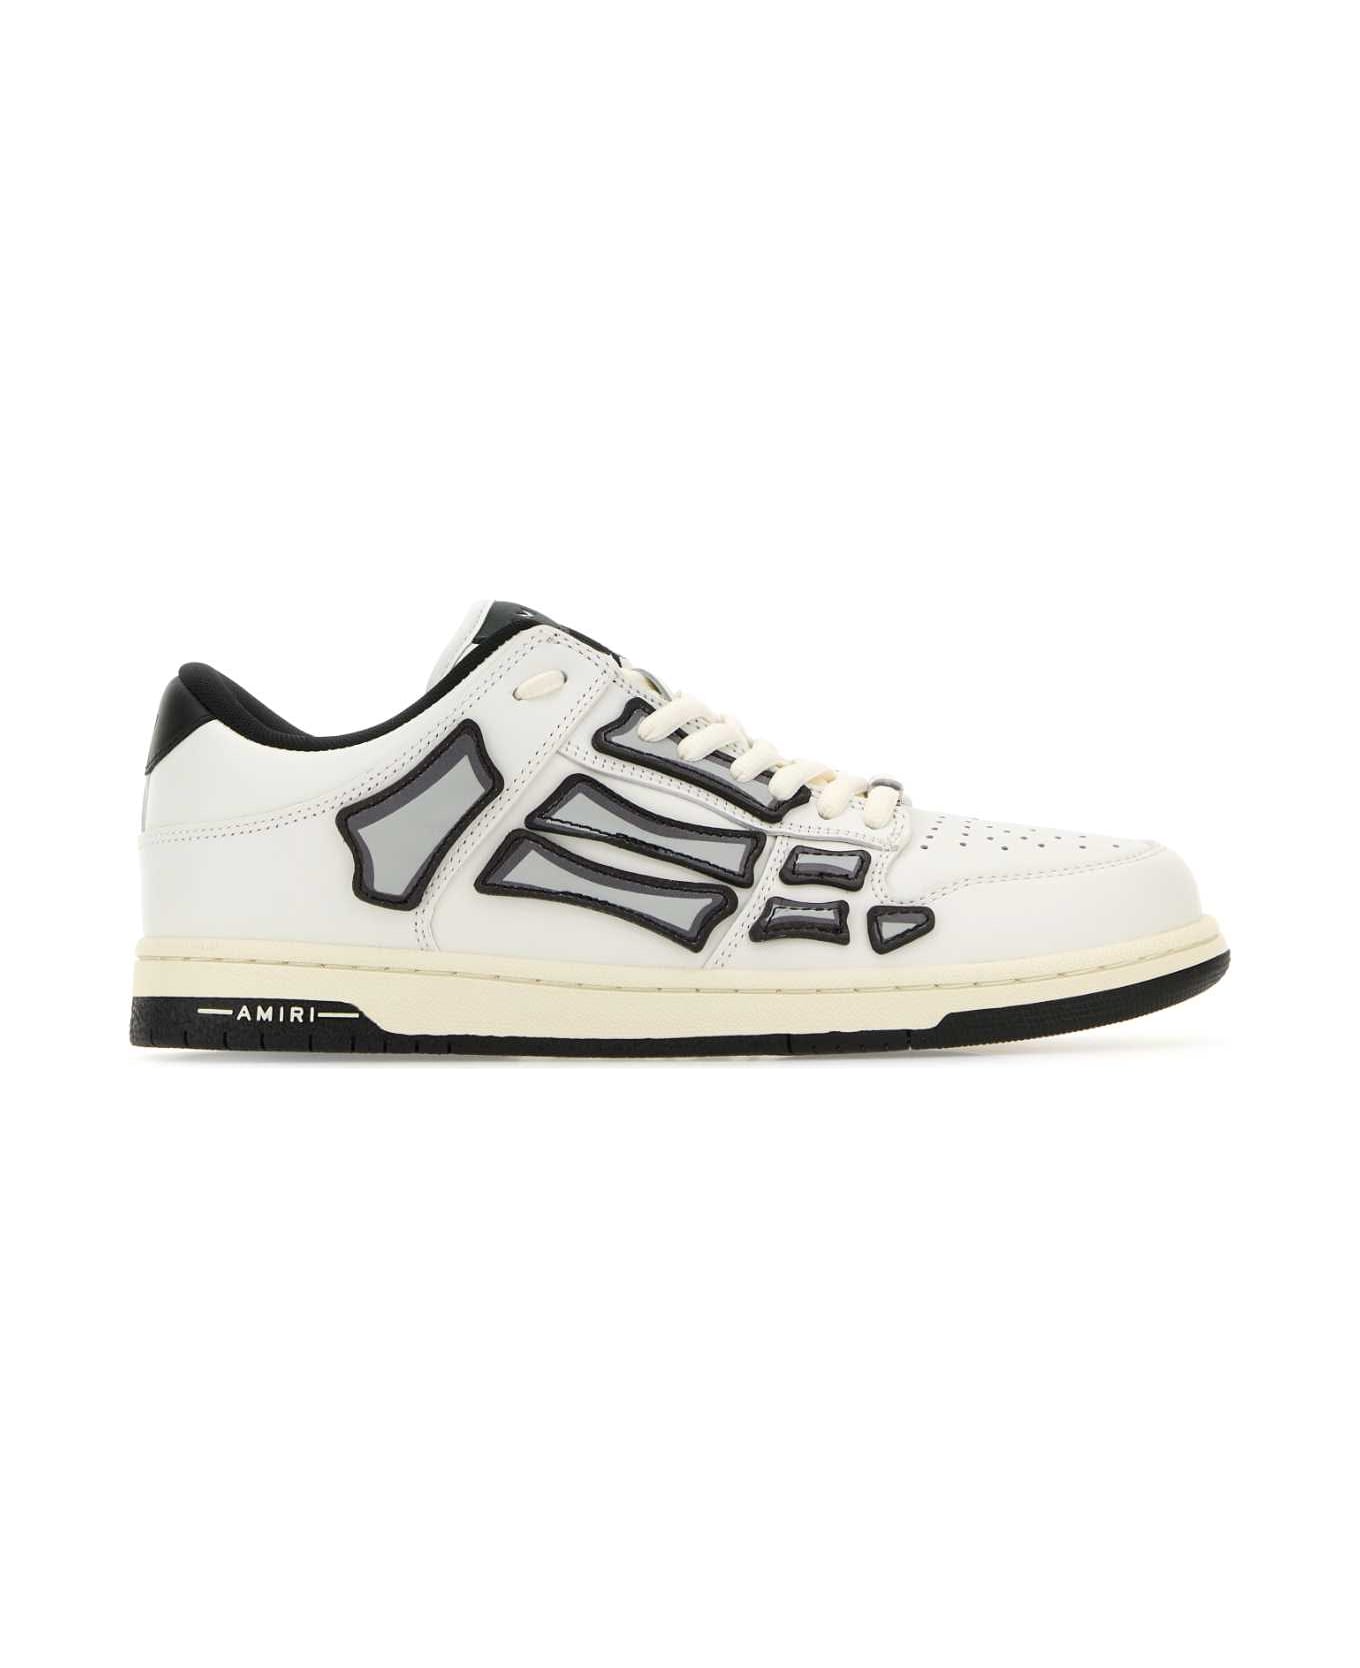 AMIRI White Leather Skel Sneakers - WHITEBLACK